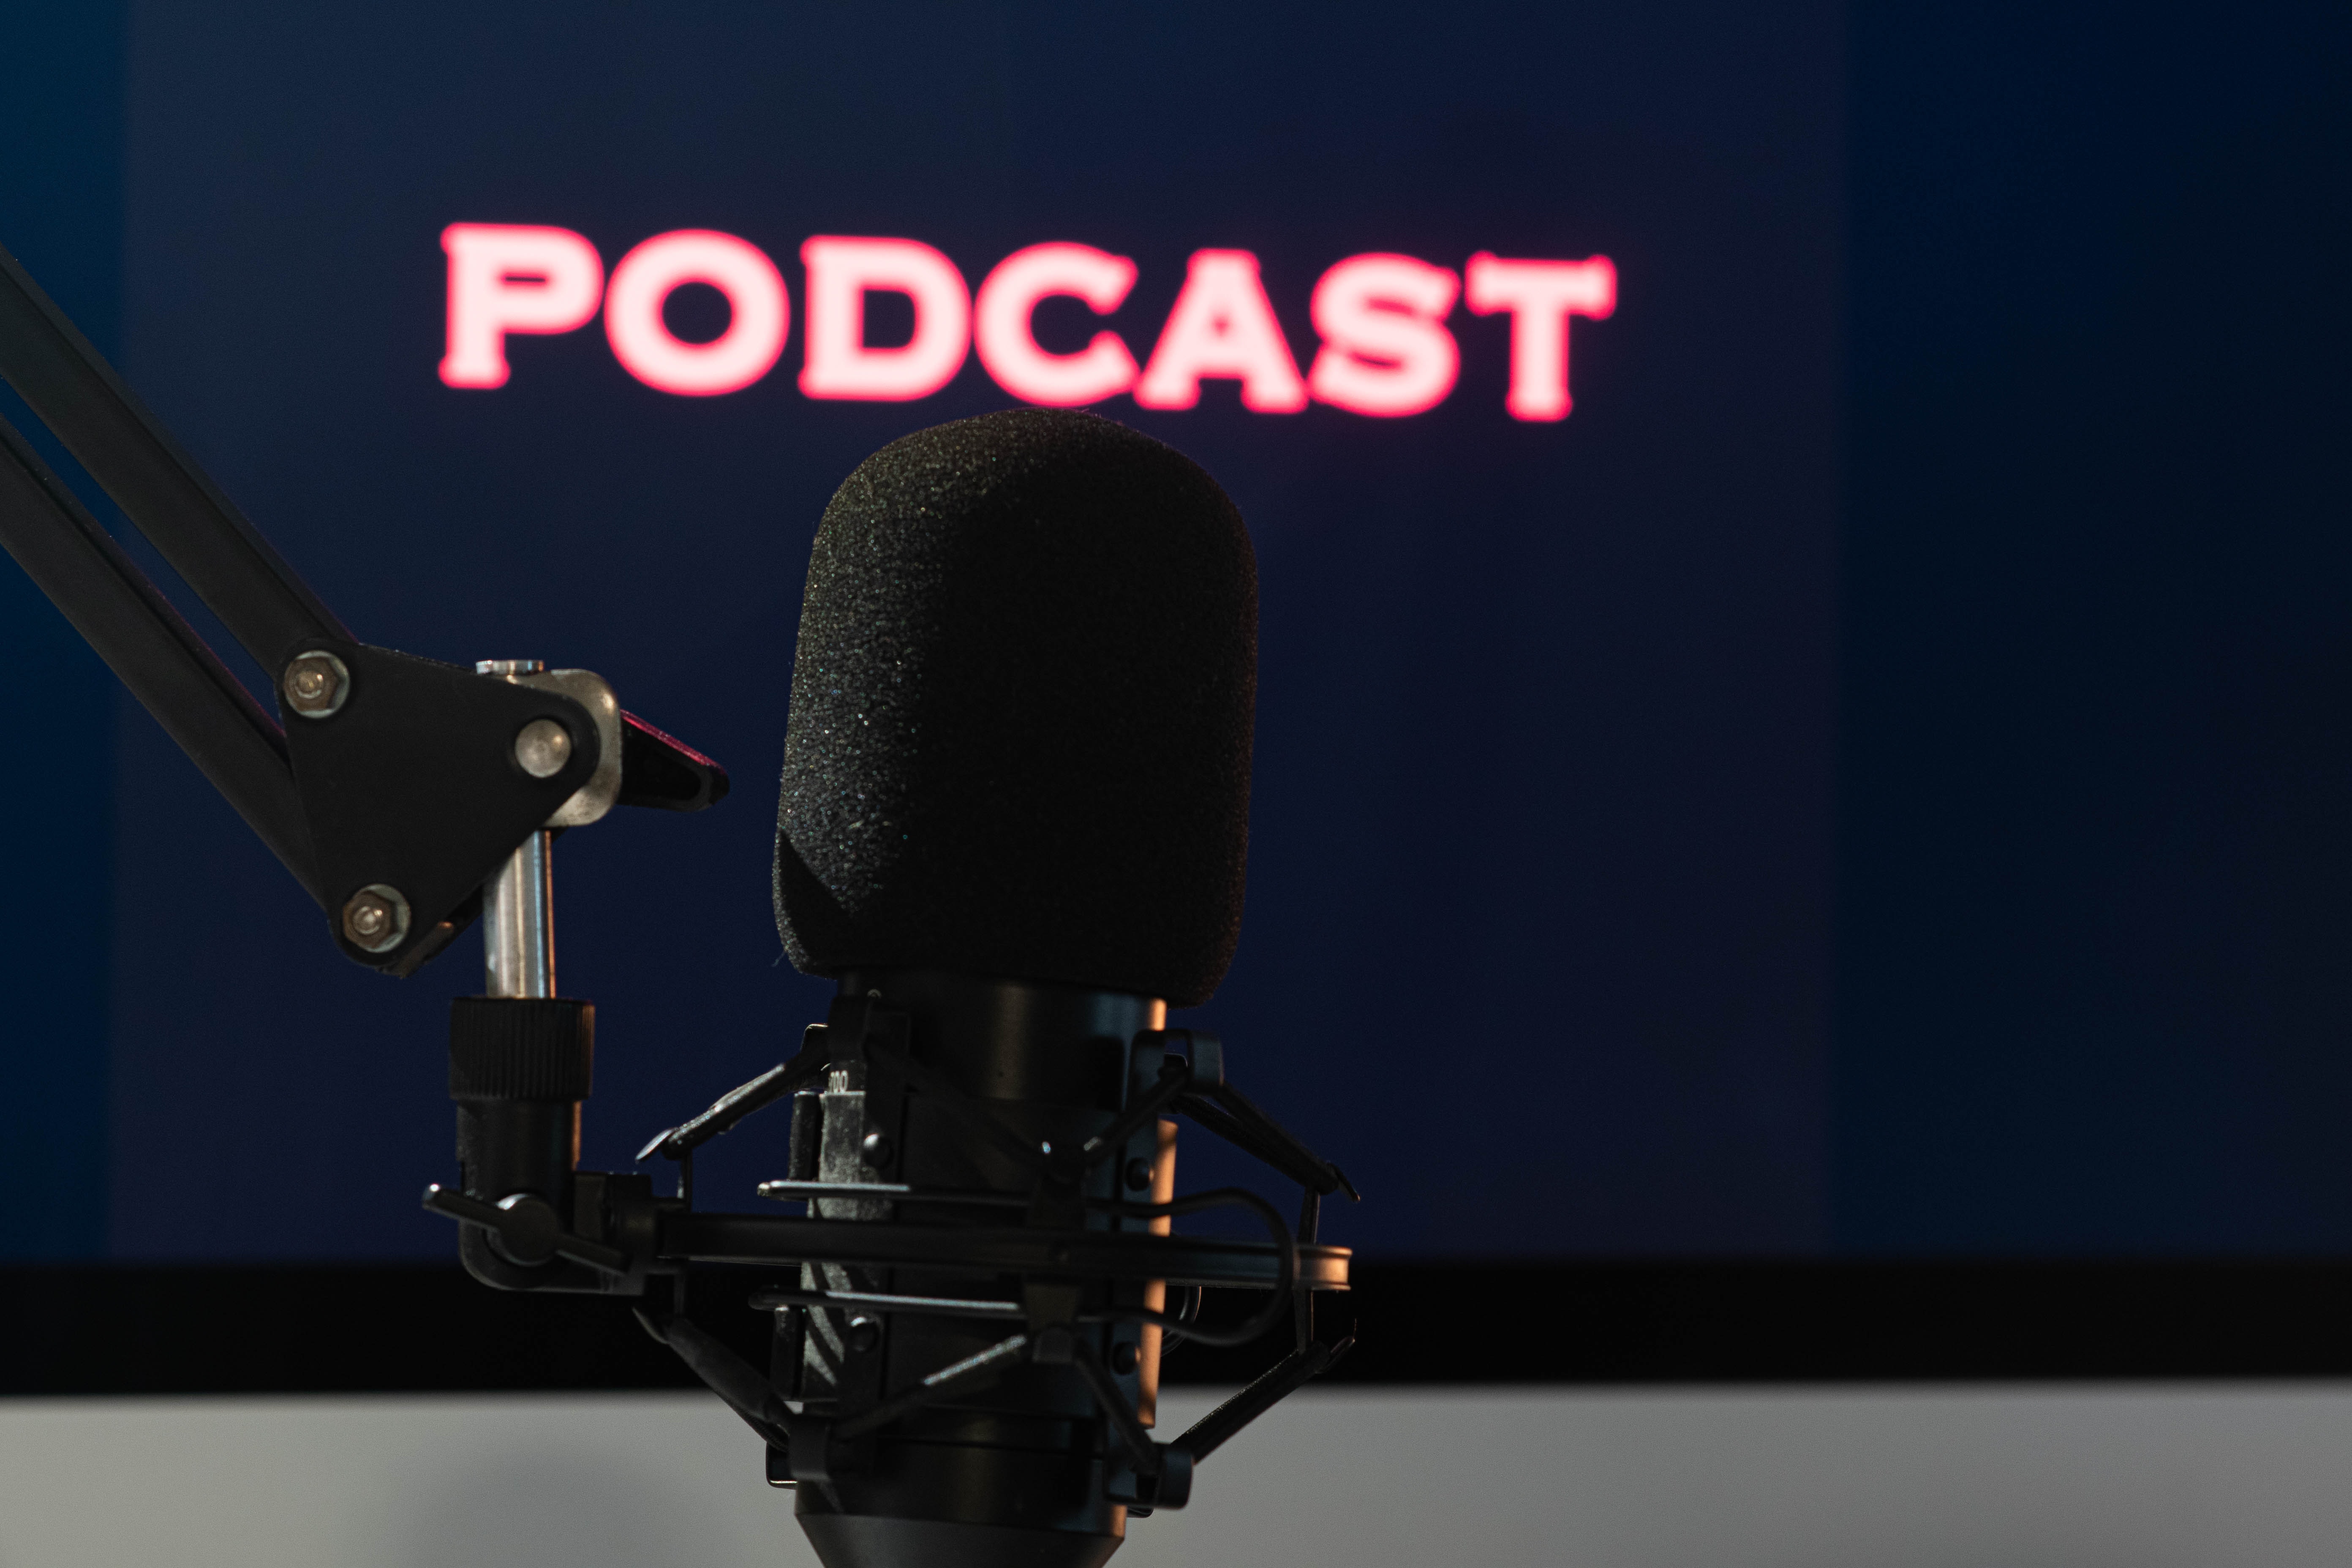 Podcast: nuove opportunità per la tua azienda